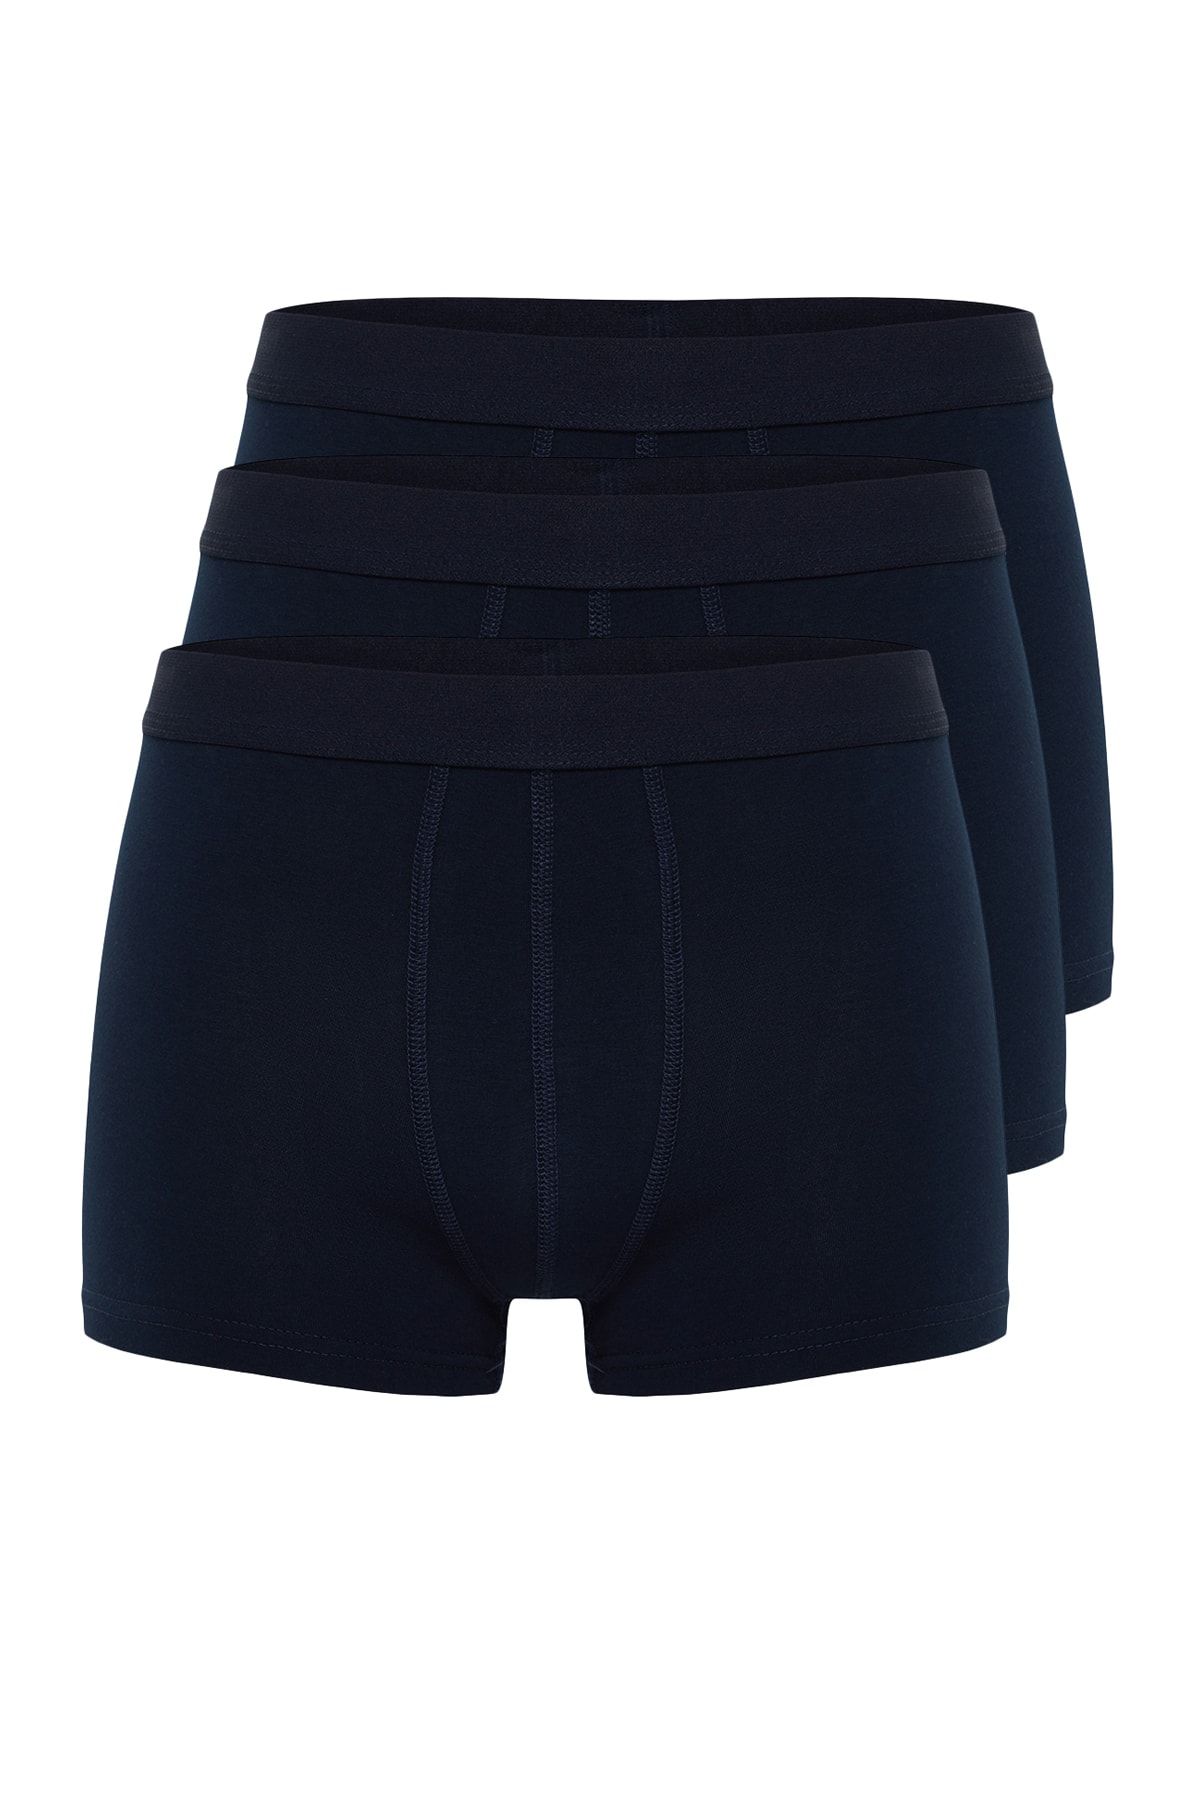 Louis Vuitton Men Underwear & Nightwear Styles, Prices - Trendyol